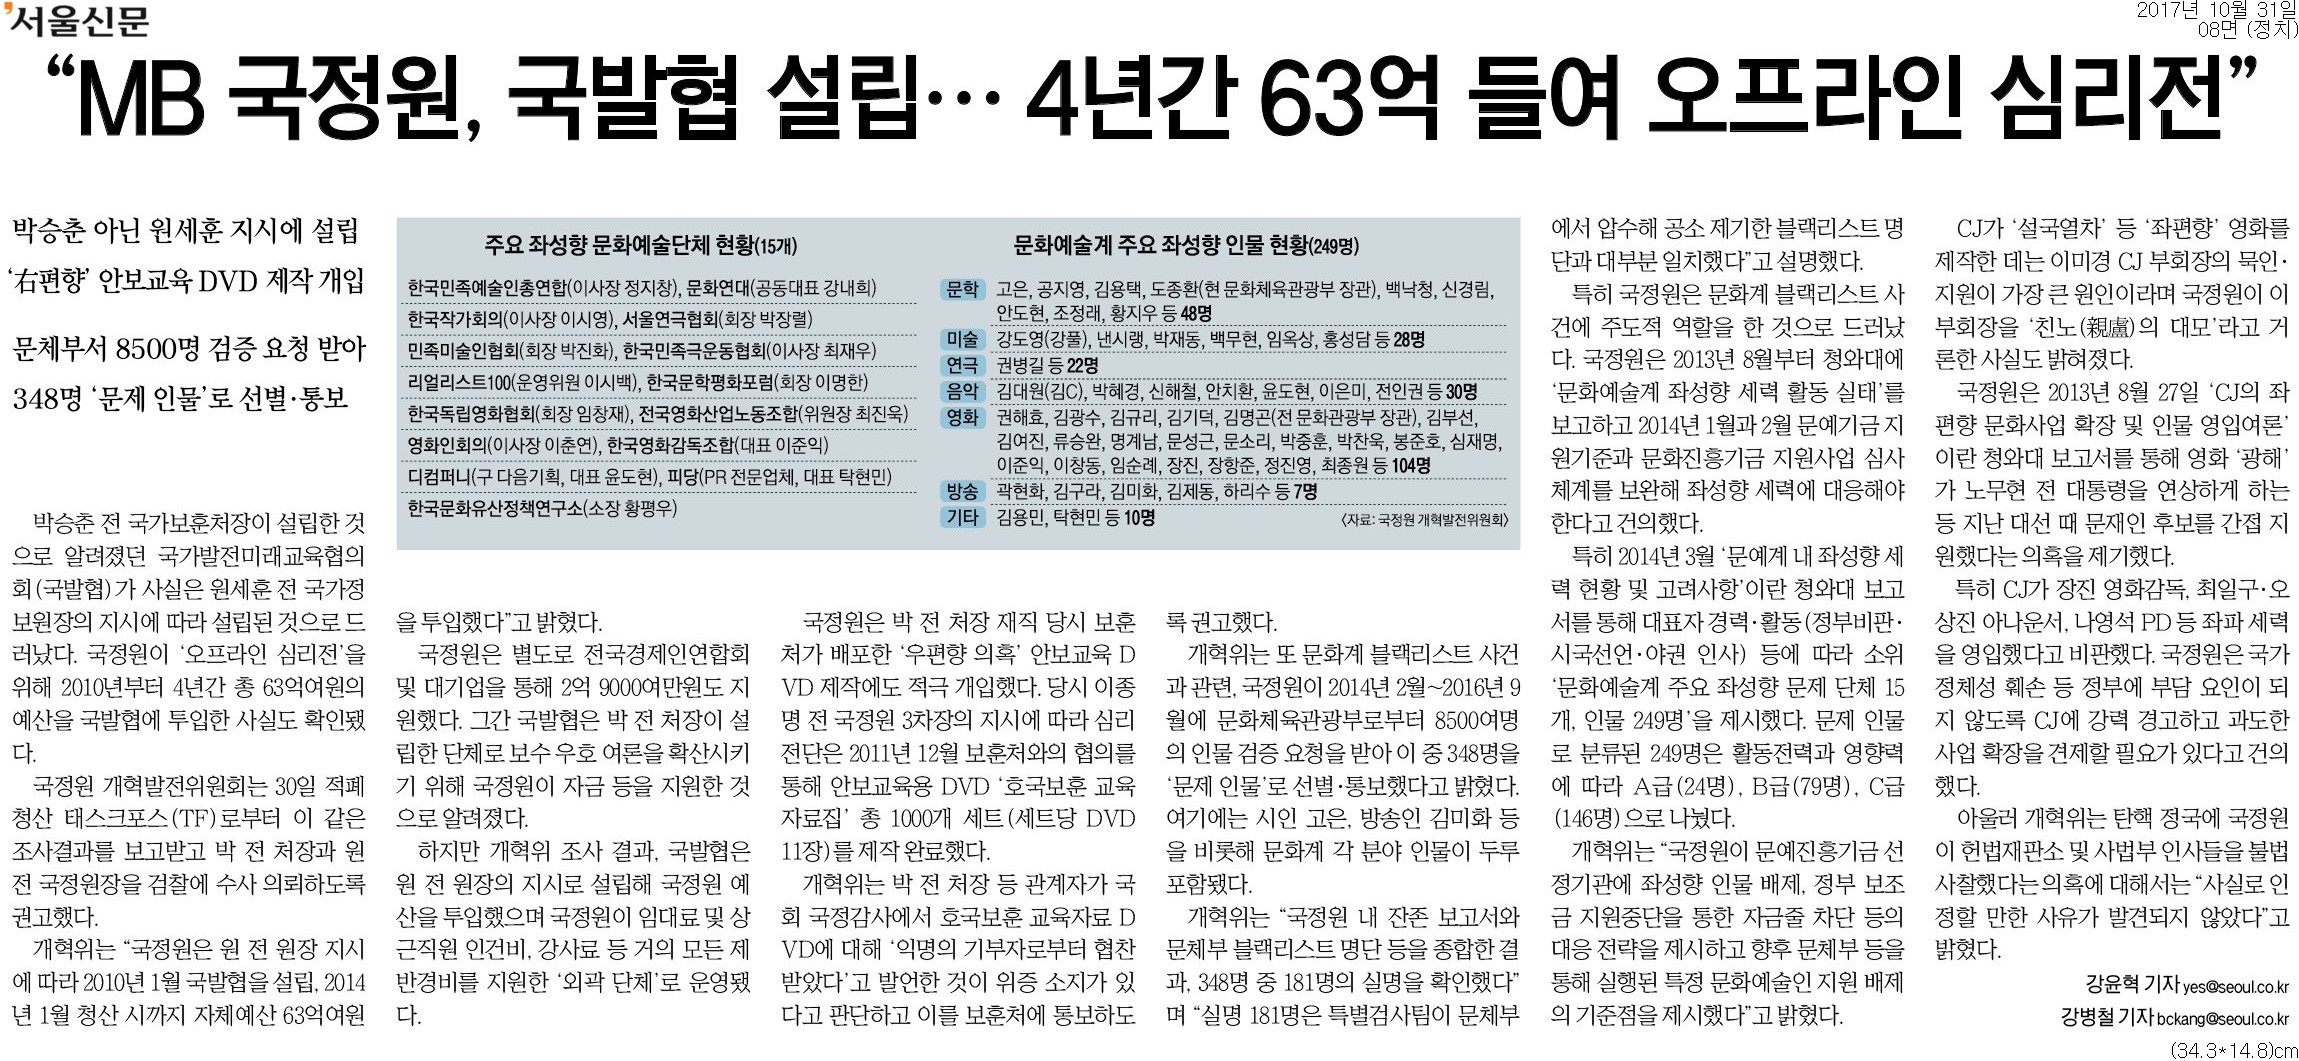 ▲ 서울신문 8면 기사